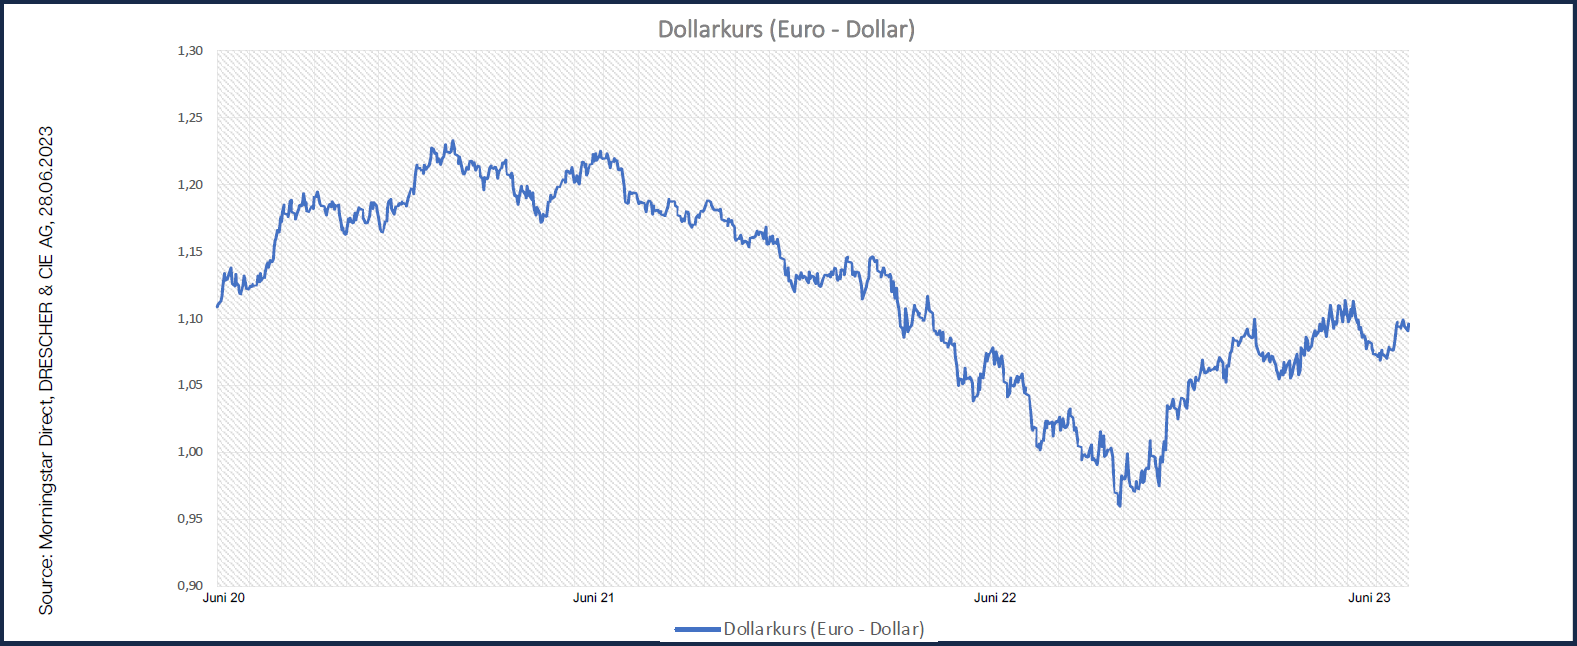 Schwindender Zinsvorteil drückt Dollarkurs